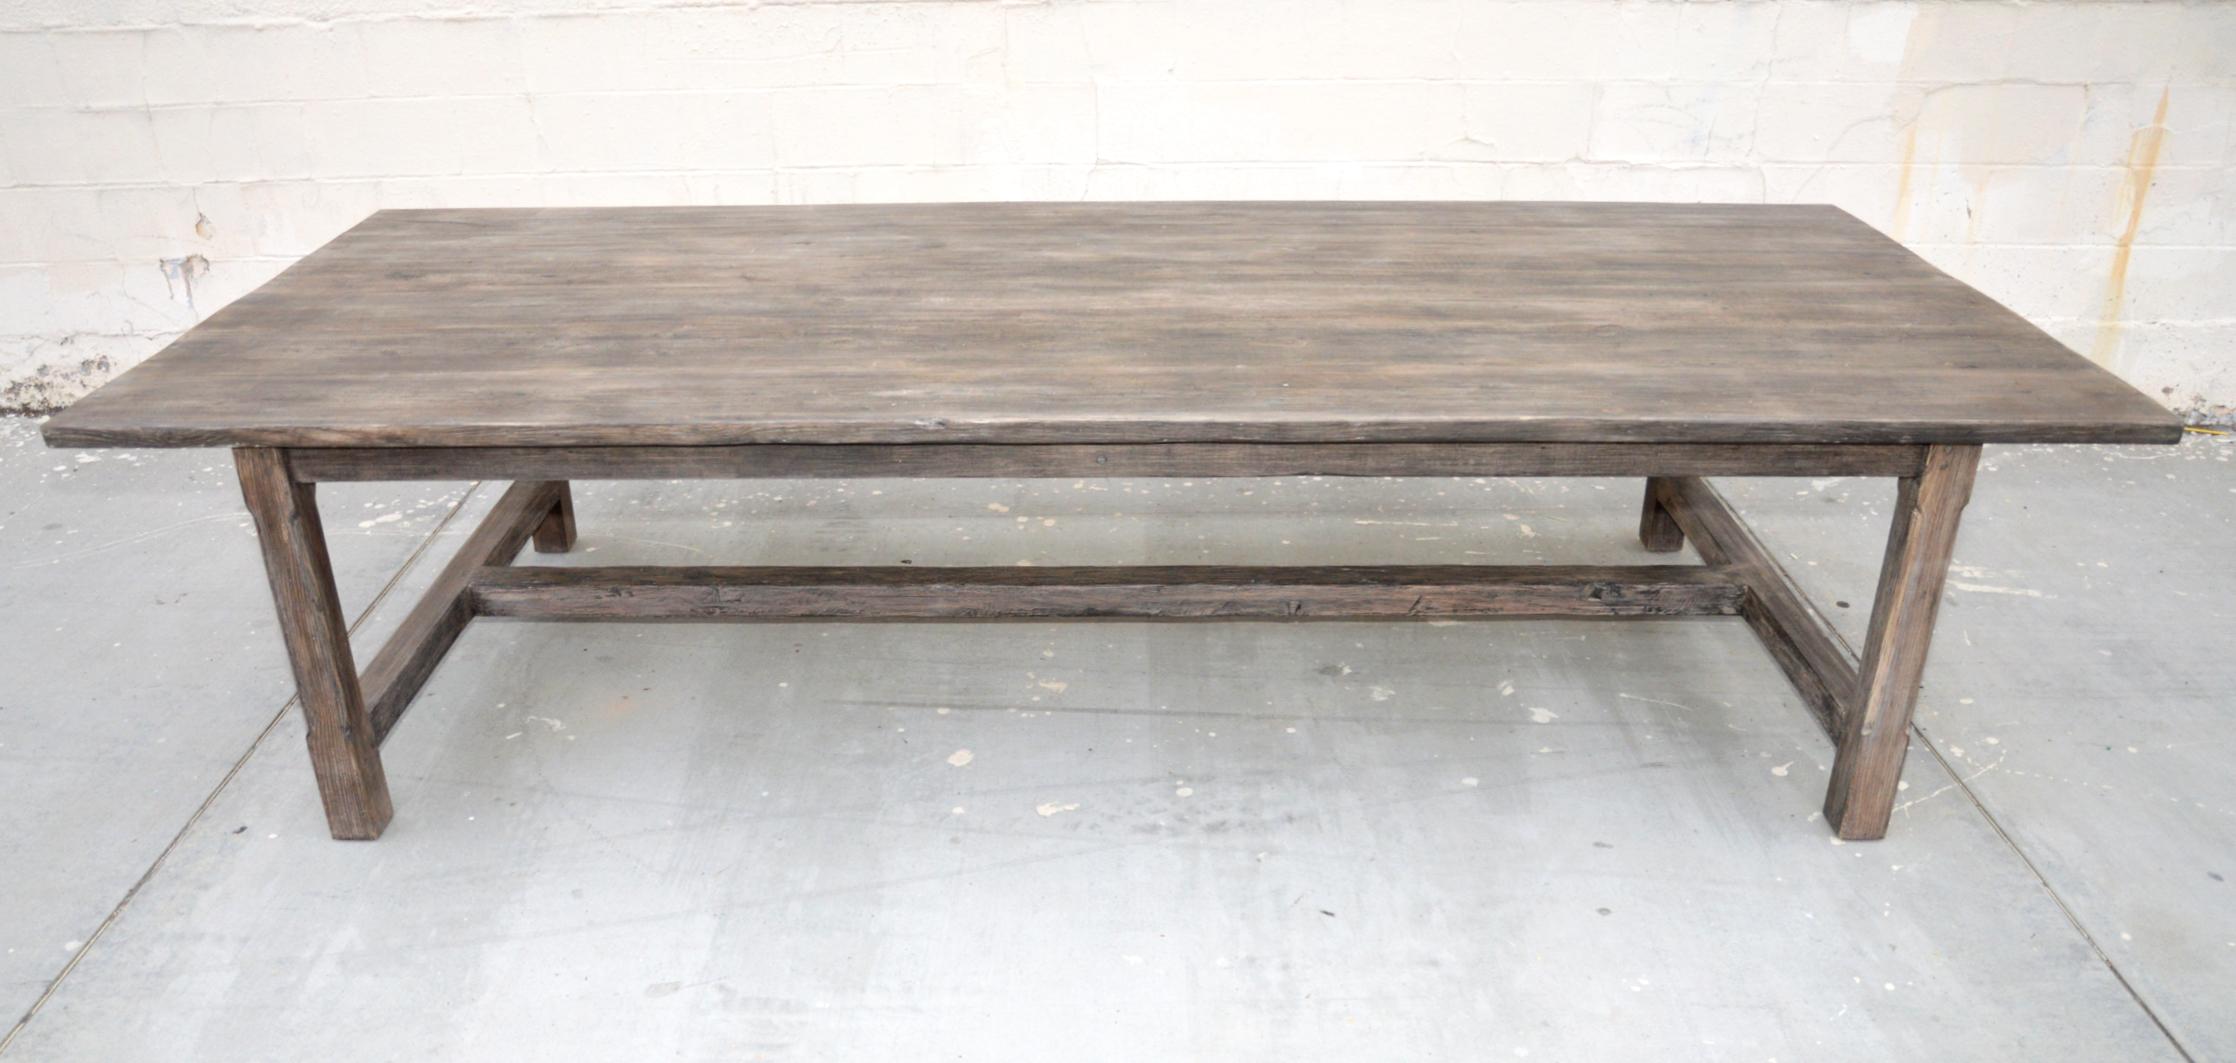 Dieser Tisch ist aus handverlesener, aufgearbeiteter Kernkiefer gefertigt, die über viele Jahrzehnte hinweg auf natürliche Weise gealtert wurde, um eine tolle authentische Patina zu erhalten. 

Der hier gezeigte Tisch ist 120